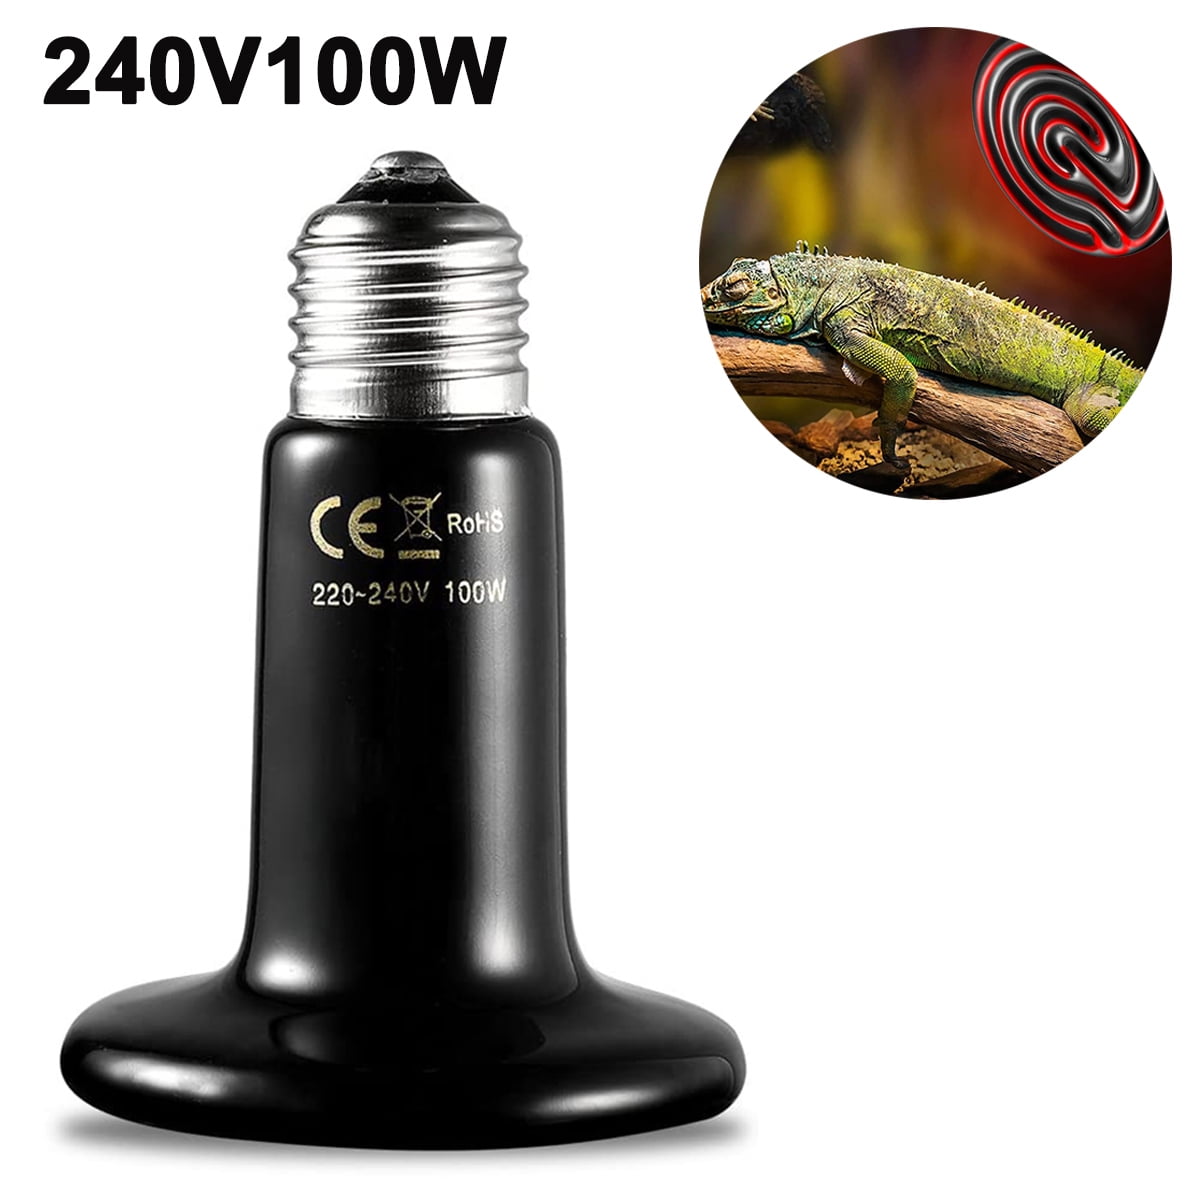 220V E27 Ceramic UV LED Heat Lamp Light Holder Chicken Brooder Reptile Basking 